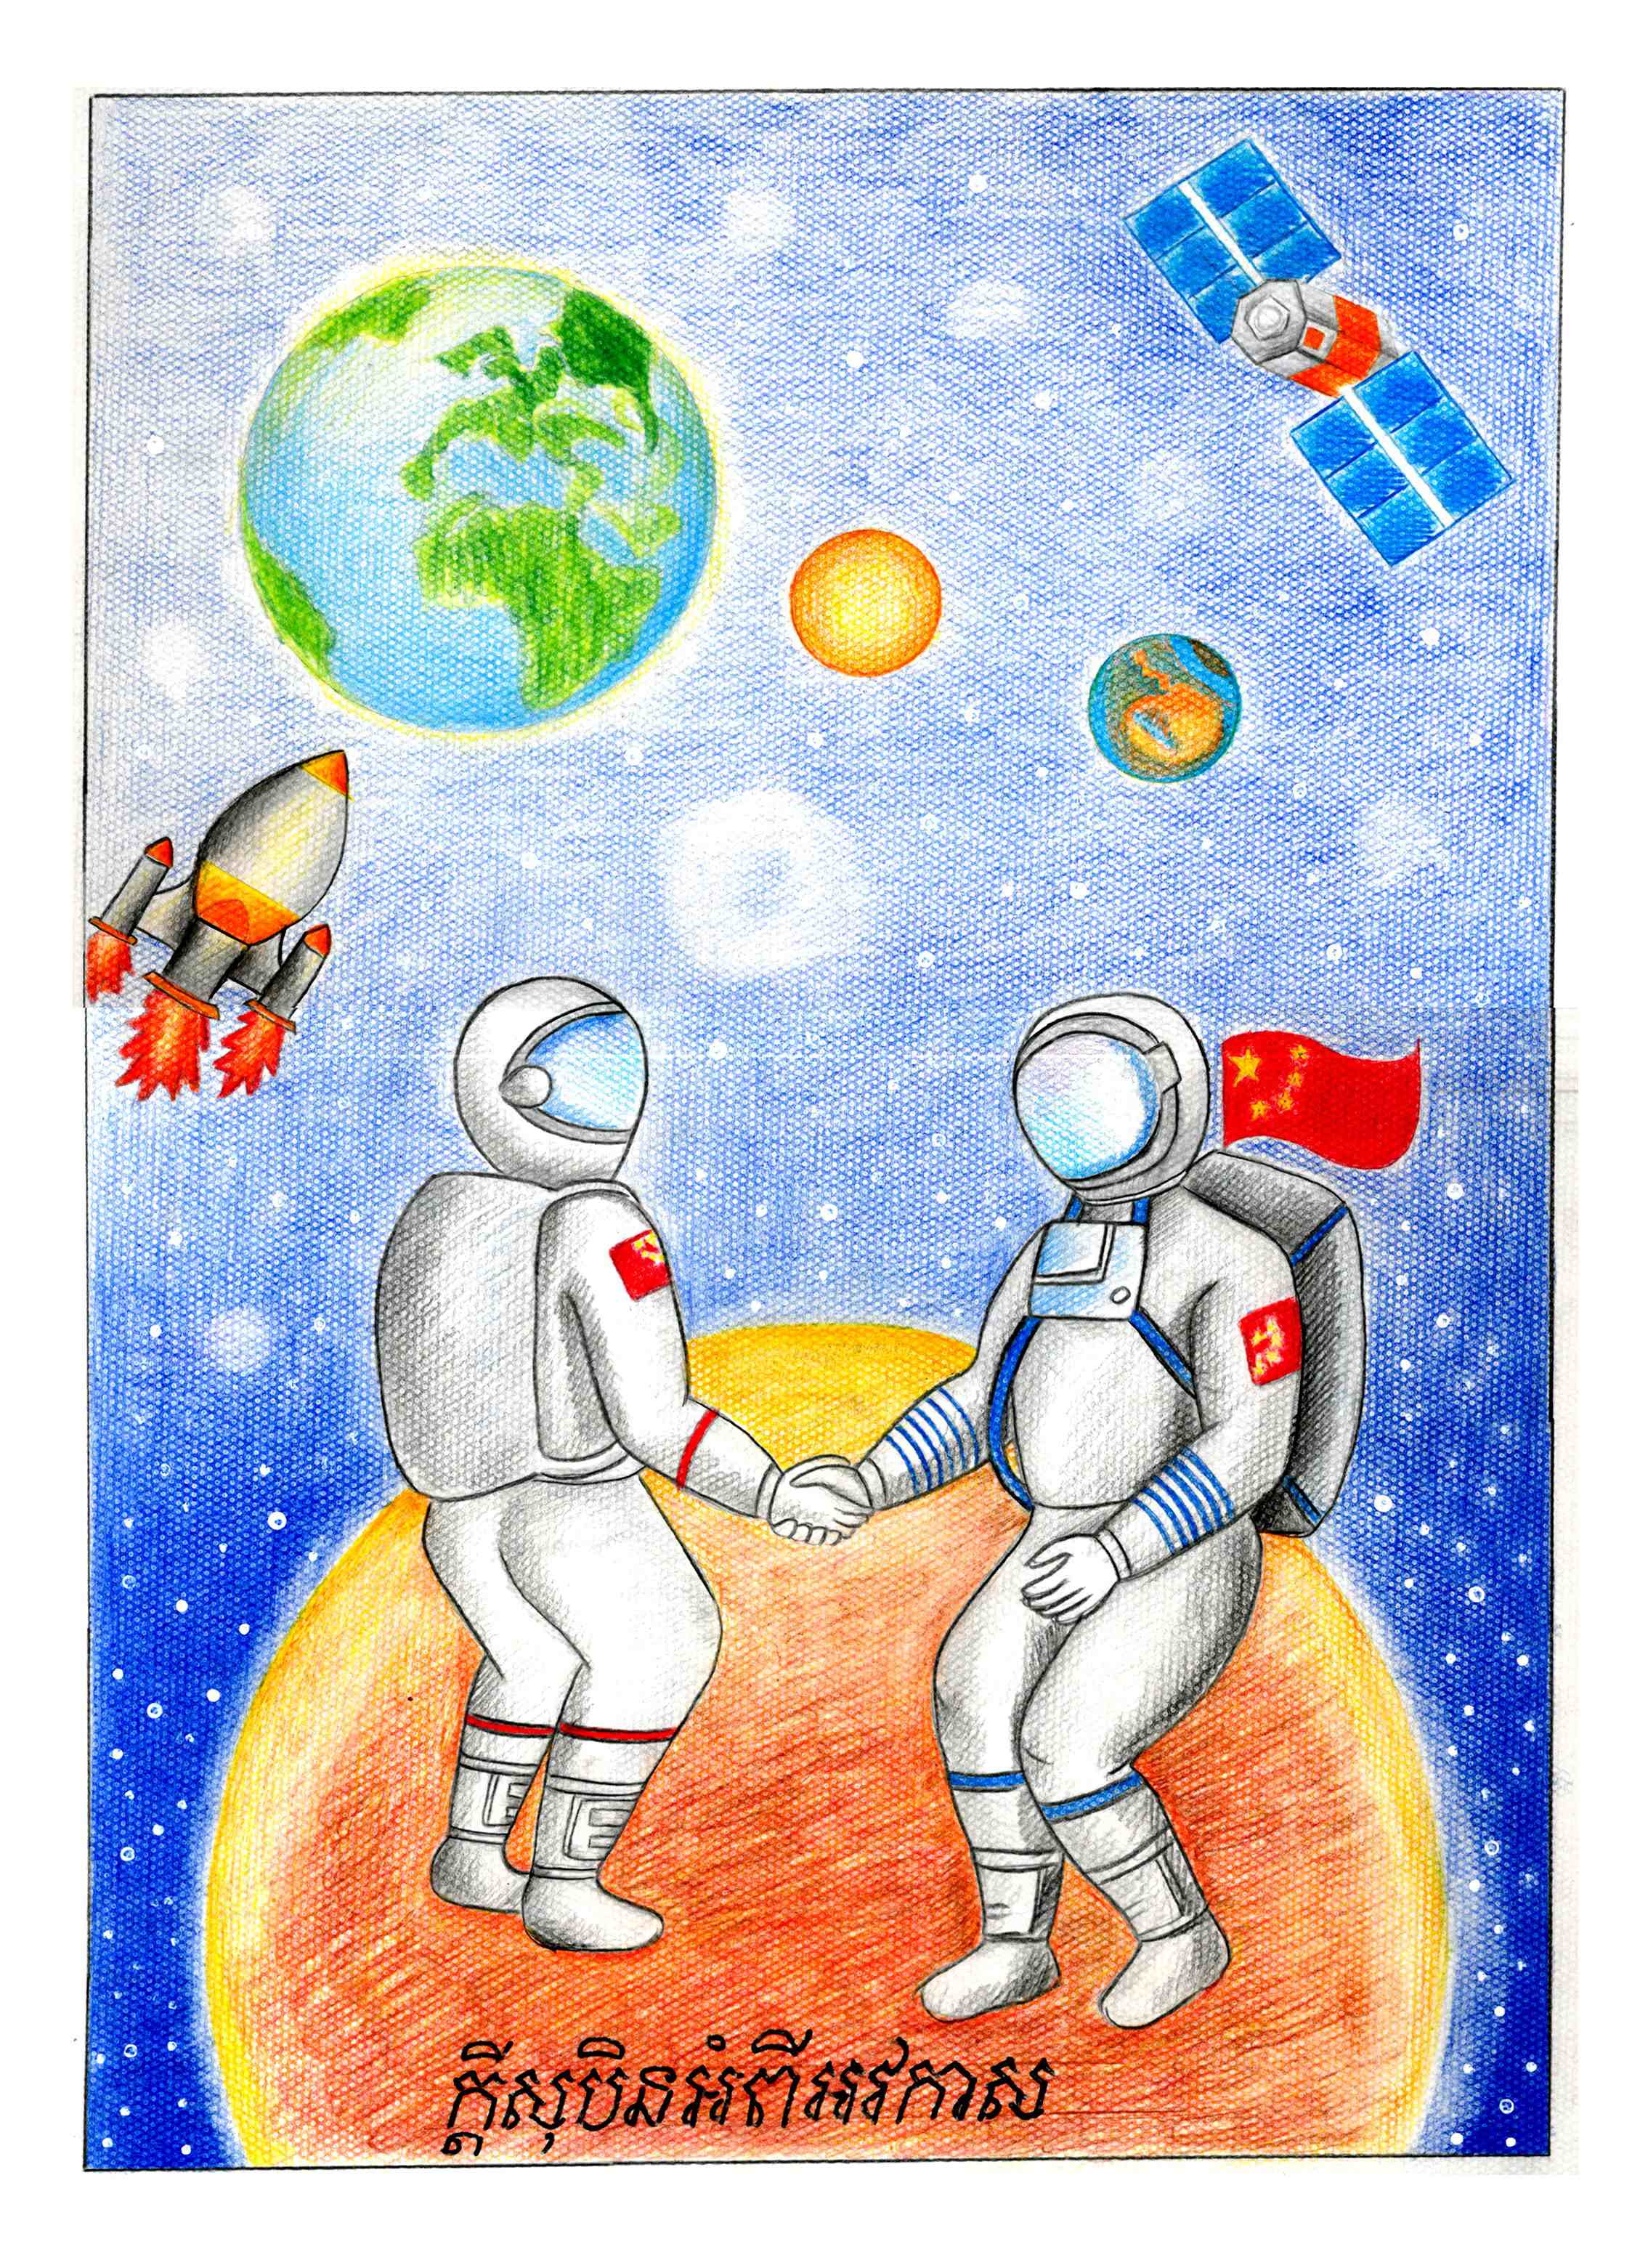 航天日绘画作品《手拉手》,柬埔寨玛丽·斯蕾亮